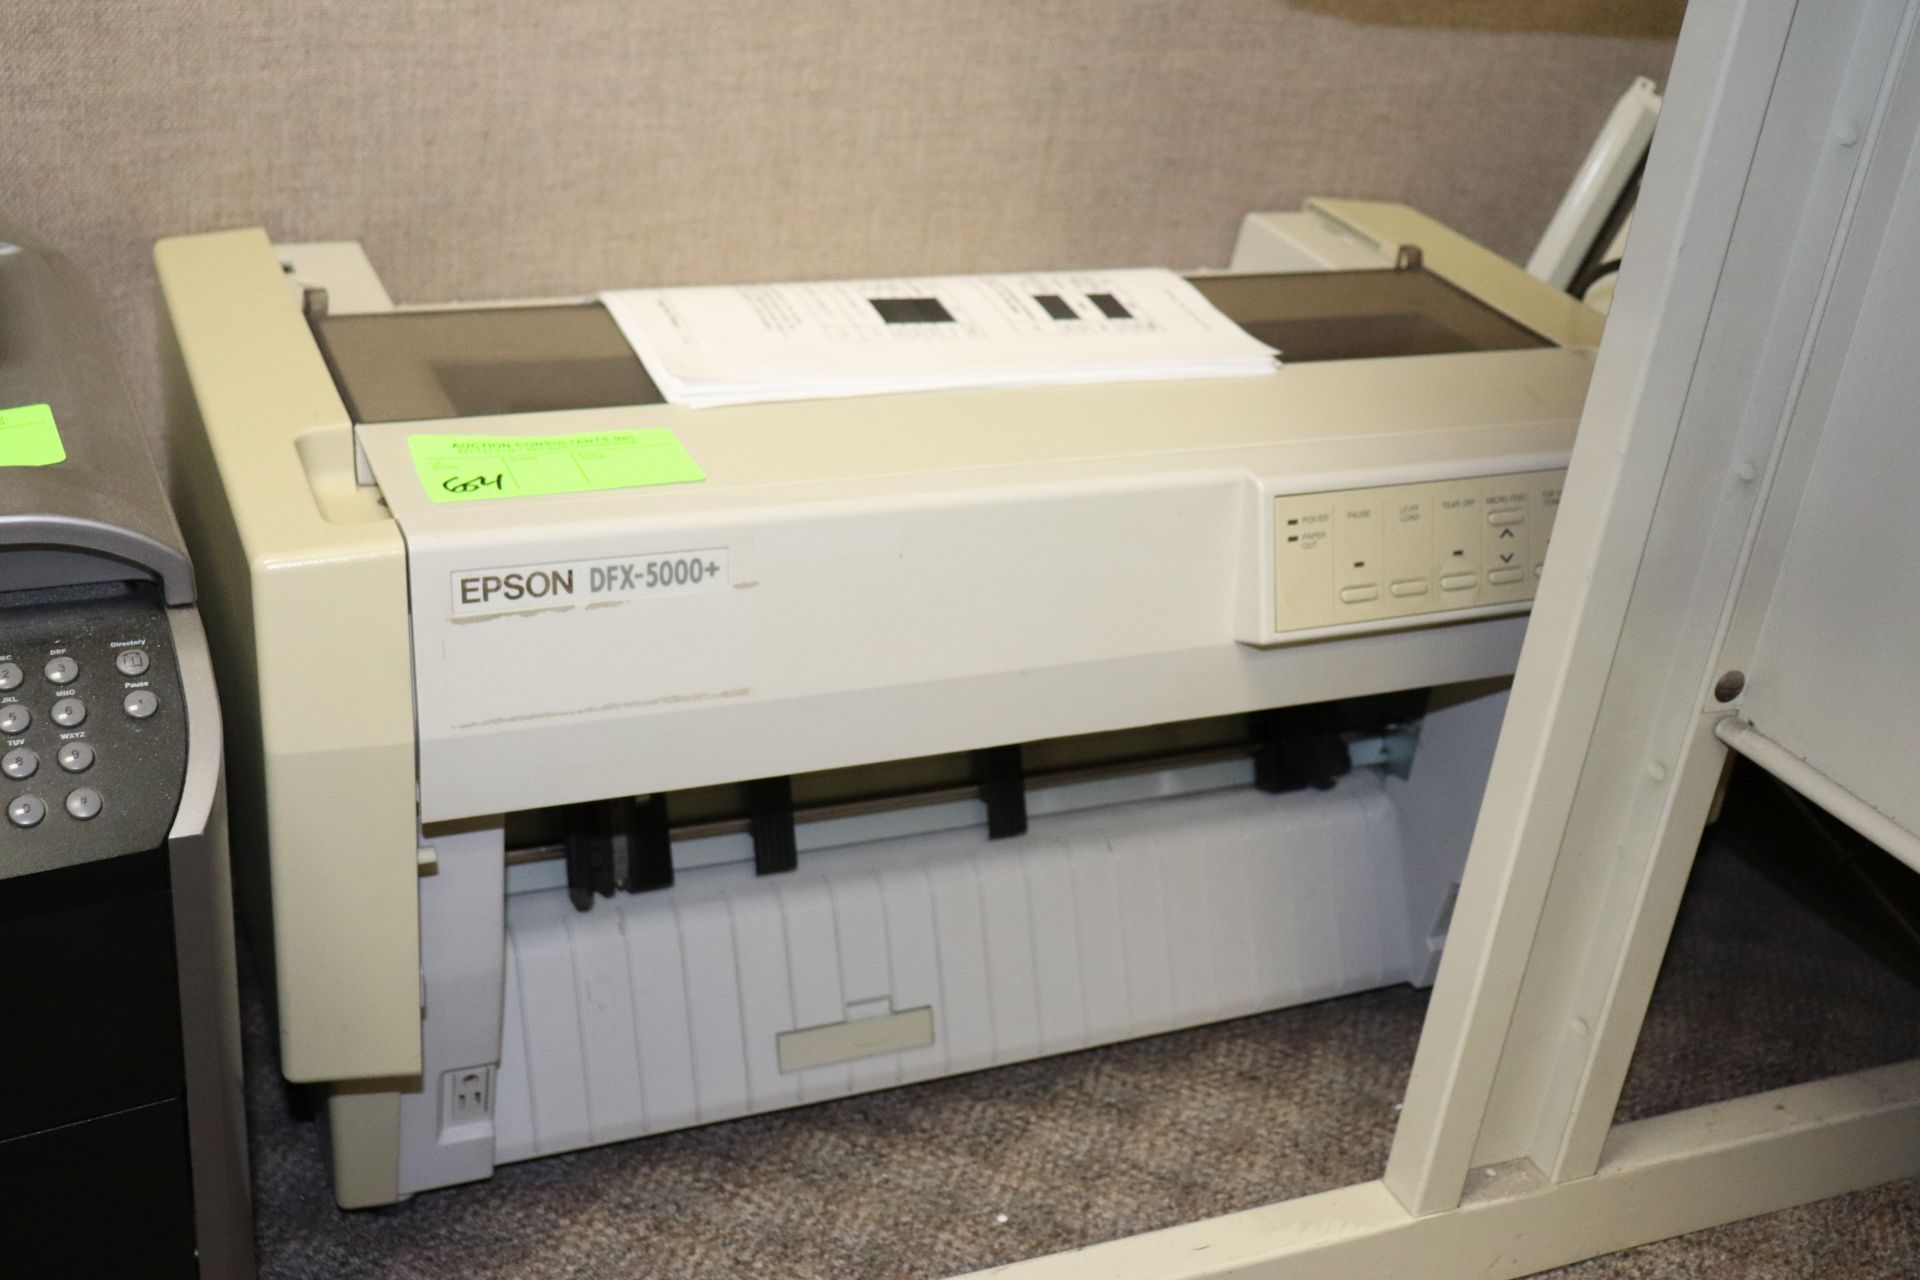 Epson DFX5000 printer